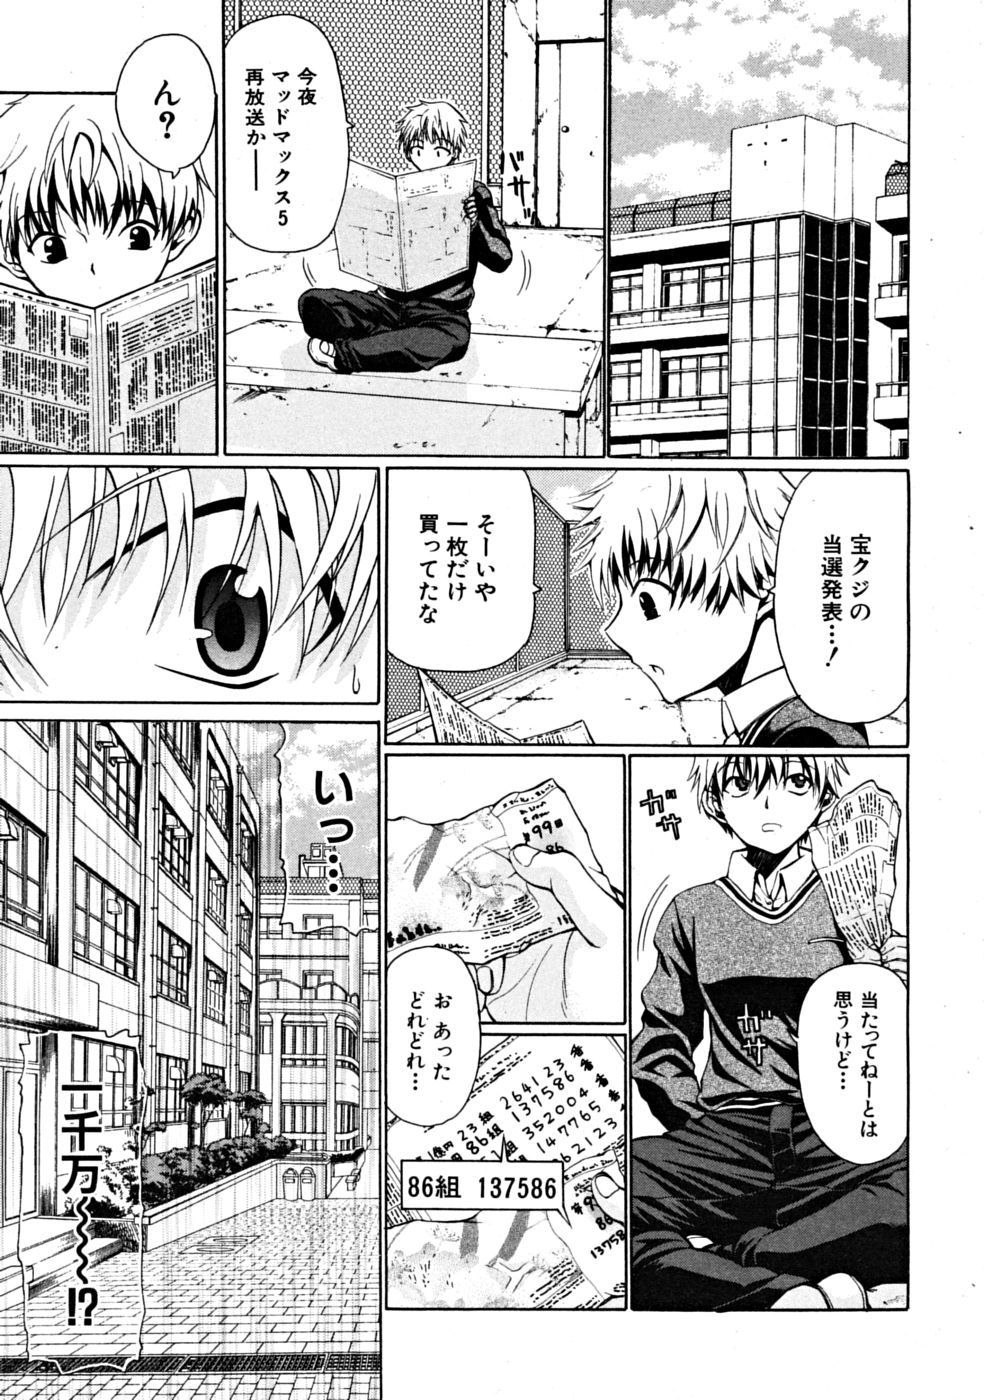 [Ozawada Kengo] Darakunodesutomasuta page 1 full